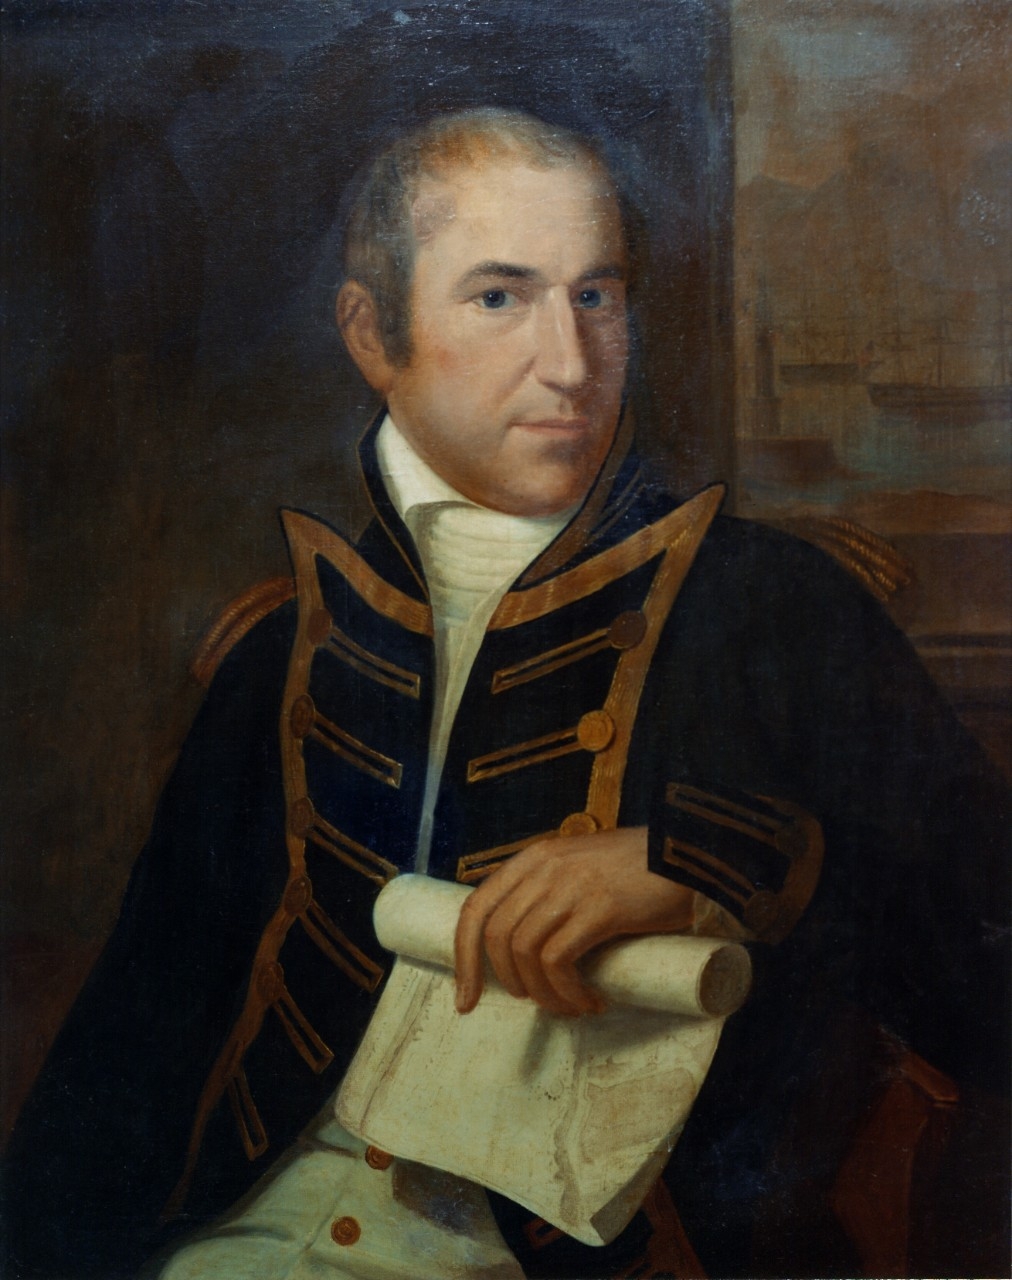 Captain Edward Preble, USN